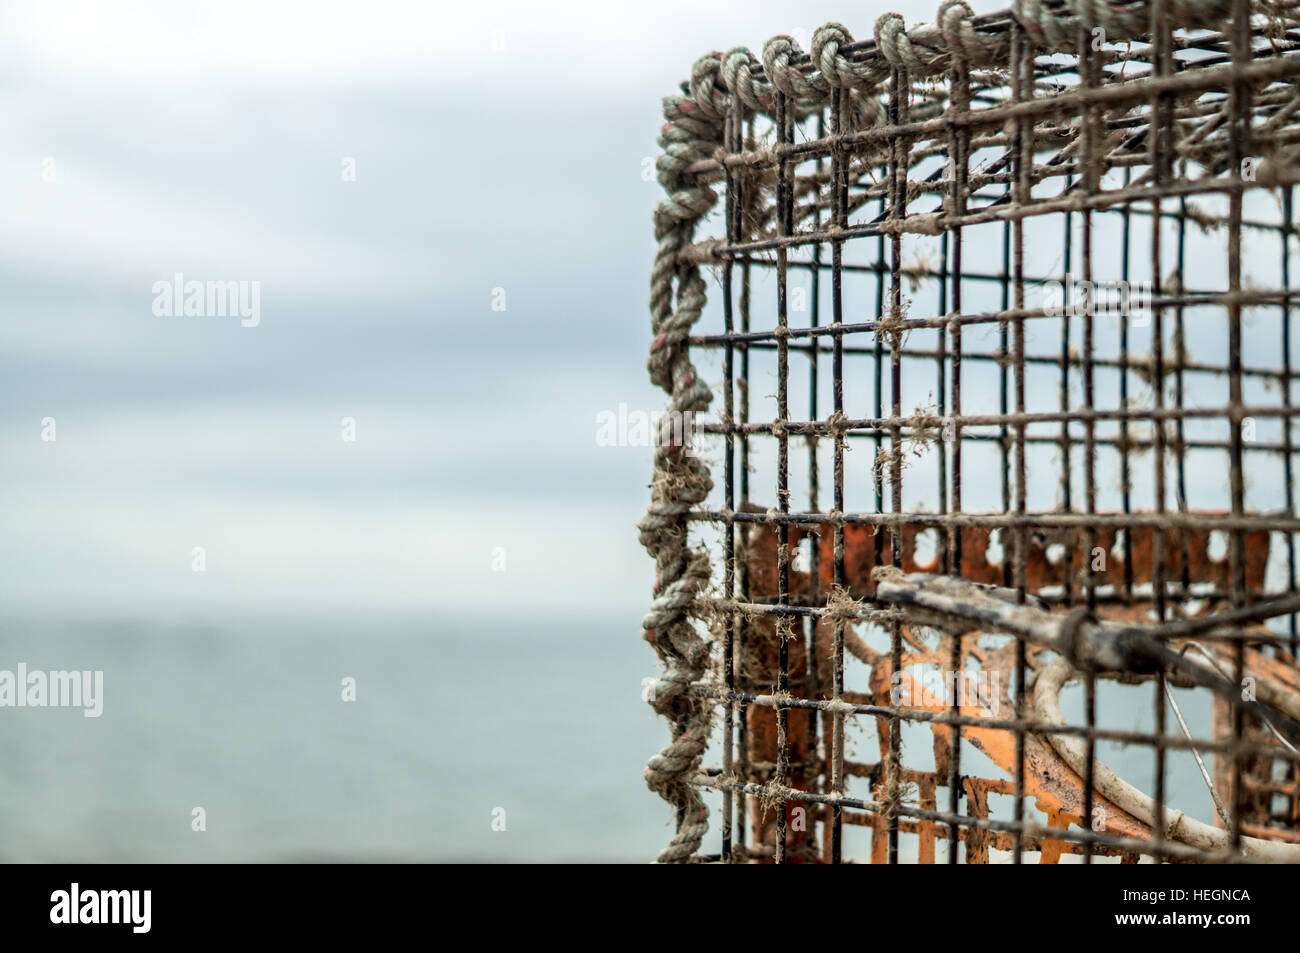 La pesca de centolla jaula con el mar de fondo Foto de stock